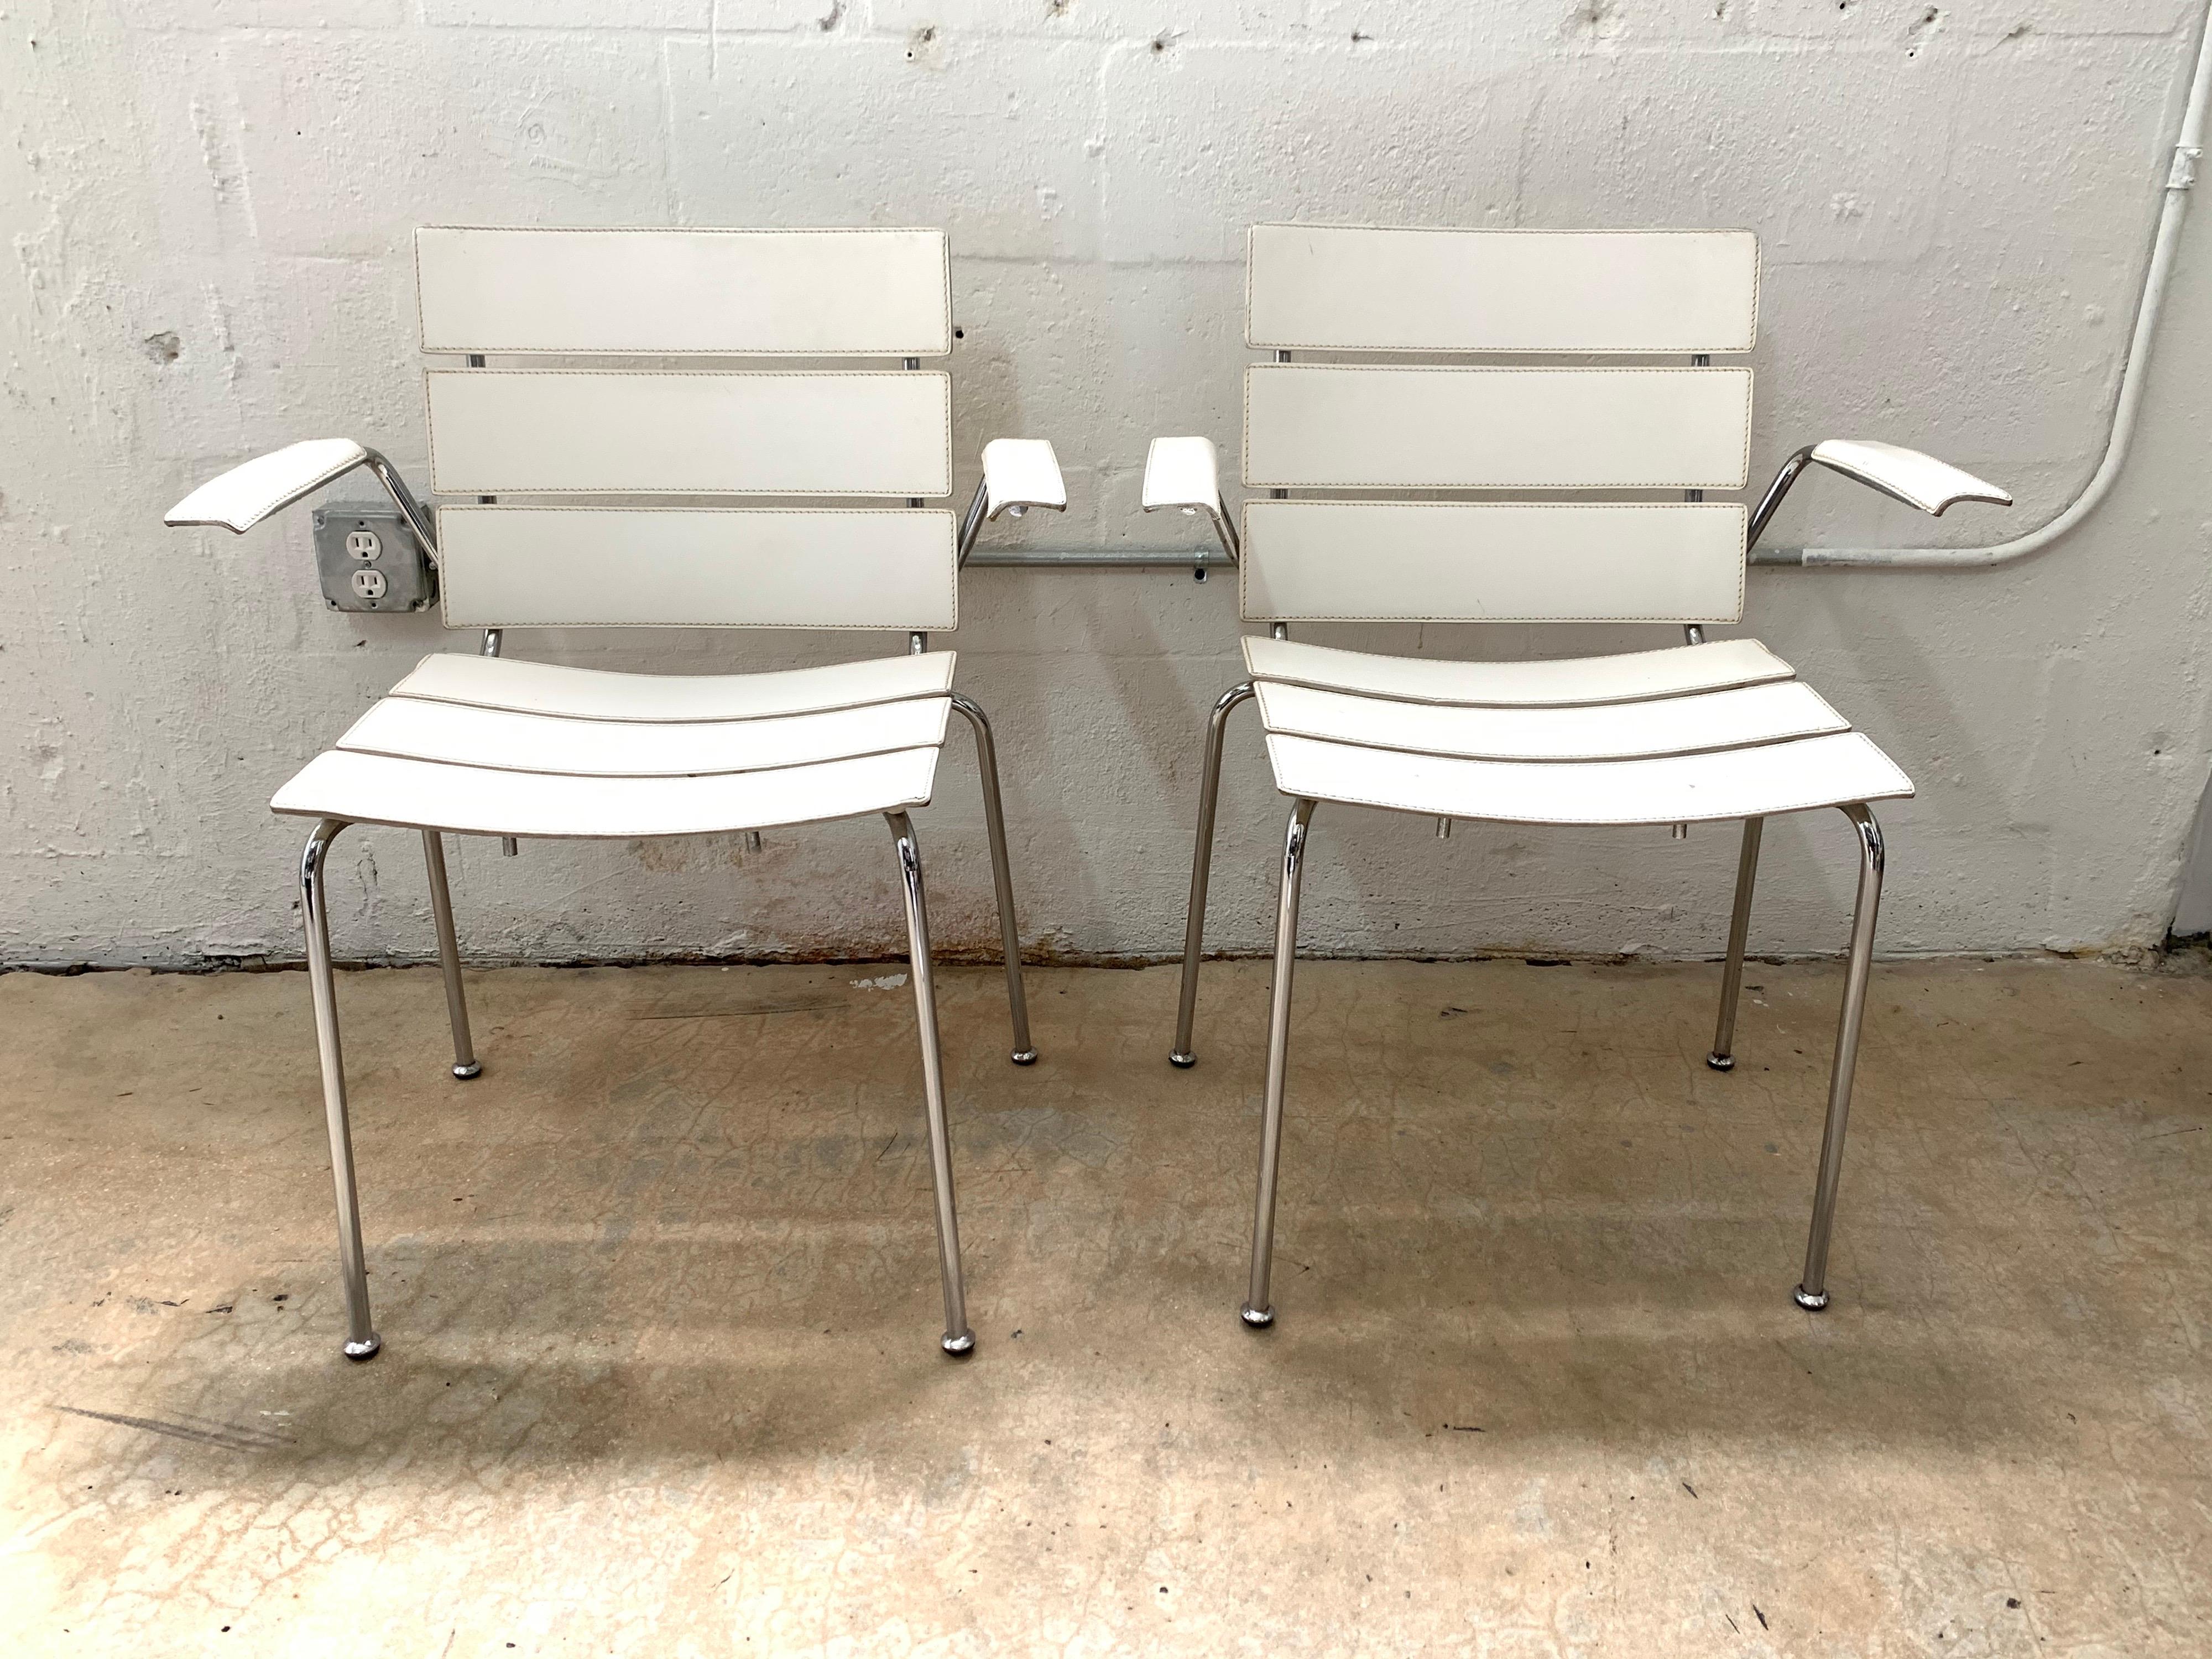 Paire de chaises rares dont l'assise, le dossier et les accoudoirs sont en cuir blanc surpiqué et dont la structure est en acier chromé, conçues par Giancarlo Vegni pour Fasem, fabriquées en Italie, 1999.